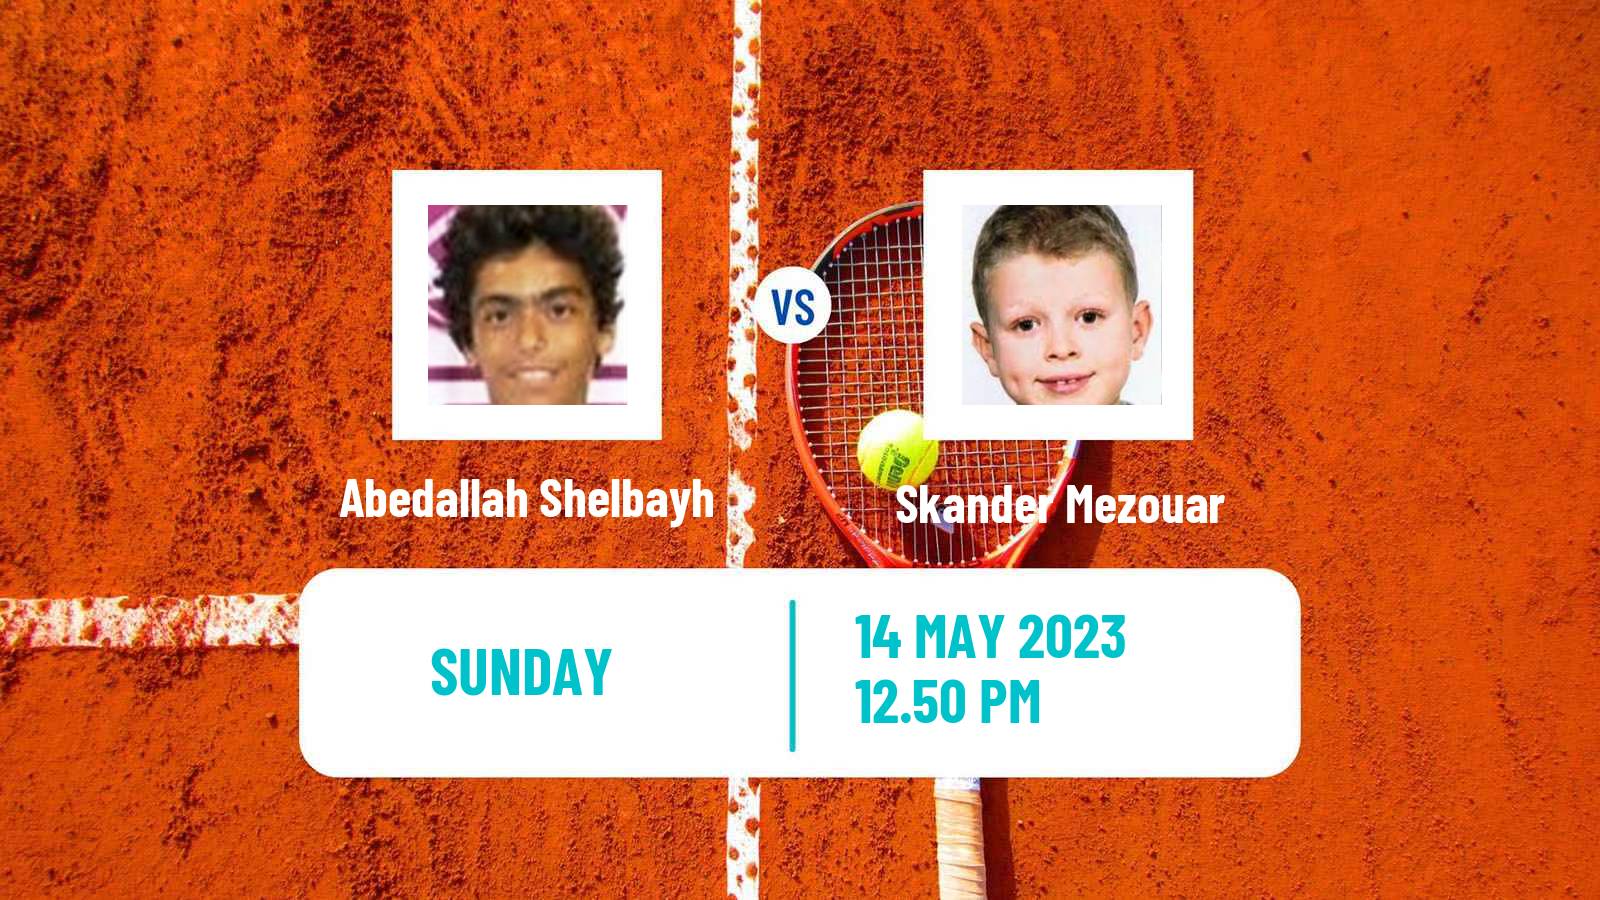 Tennis ATP Challenger Abedallah Shelbayh - Skander Mezouar